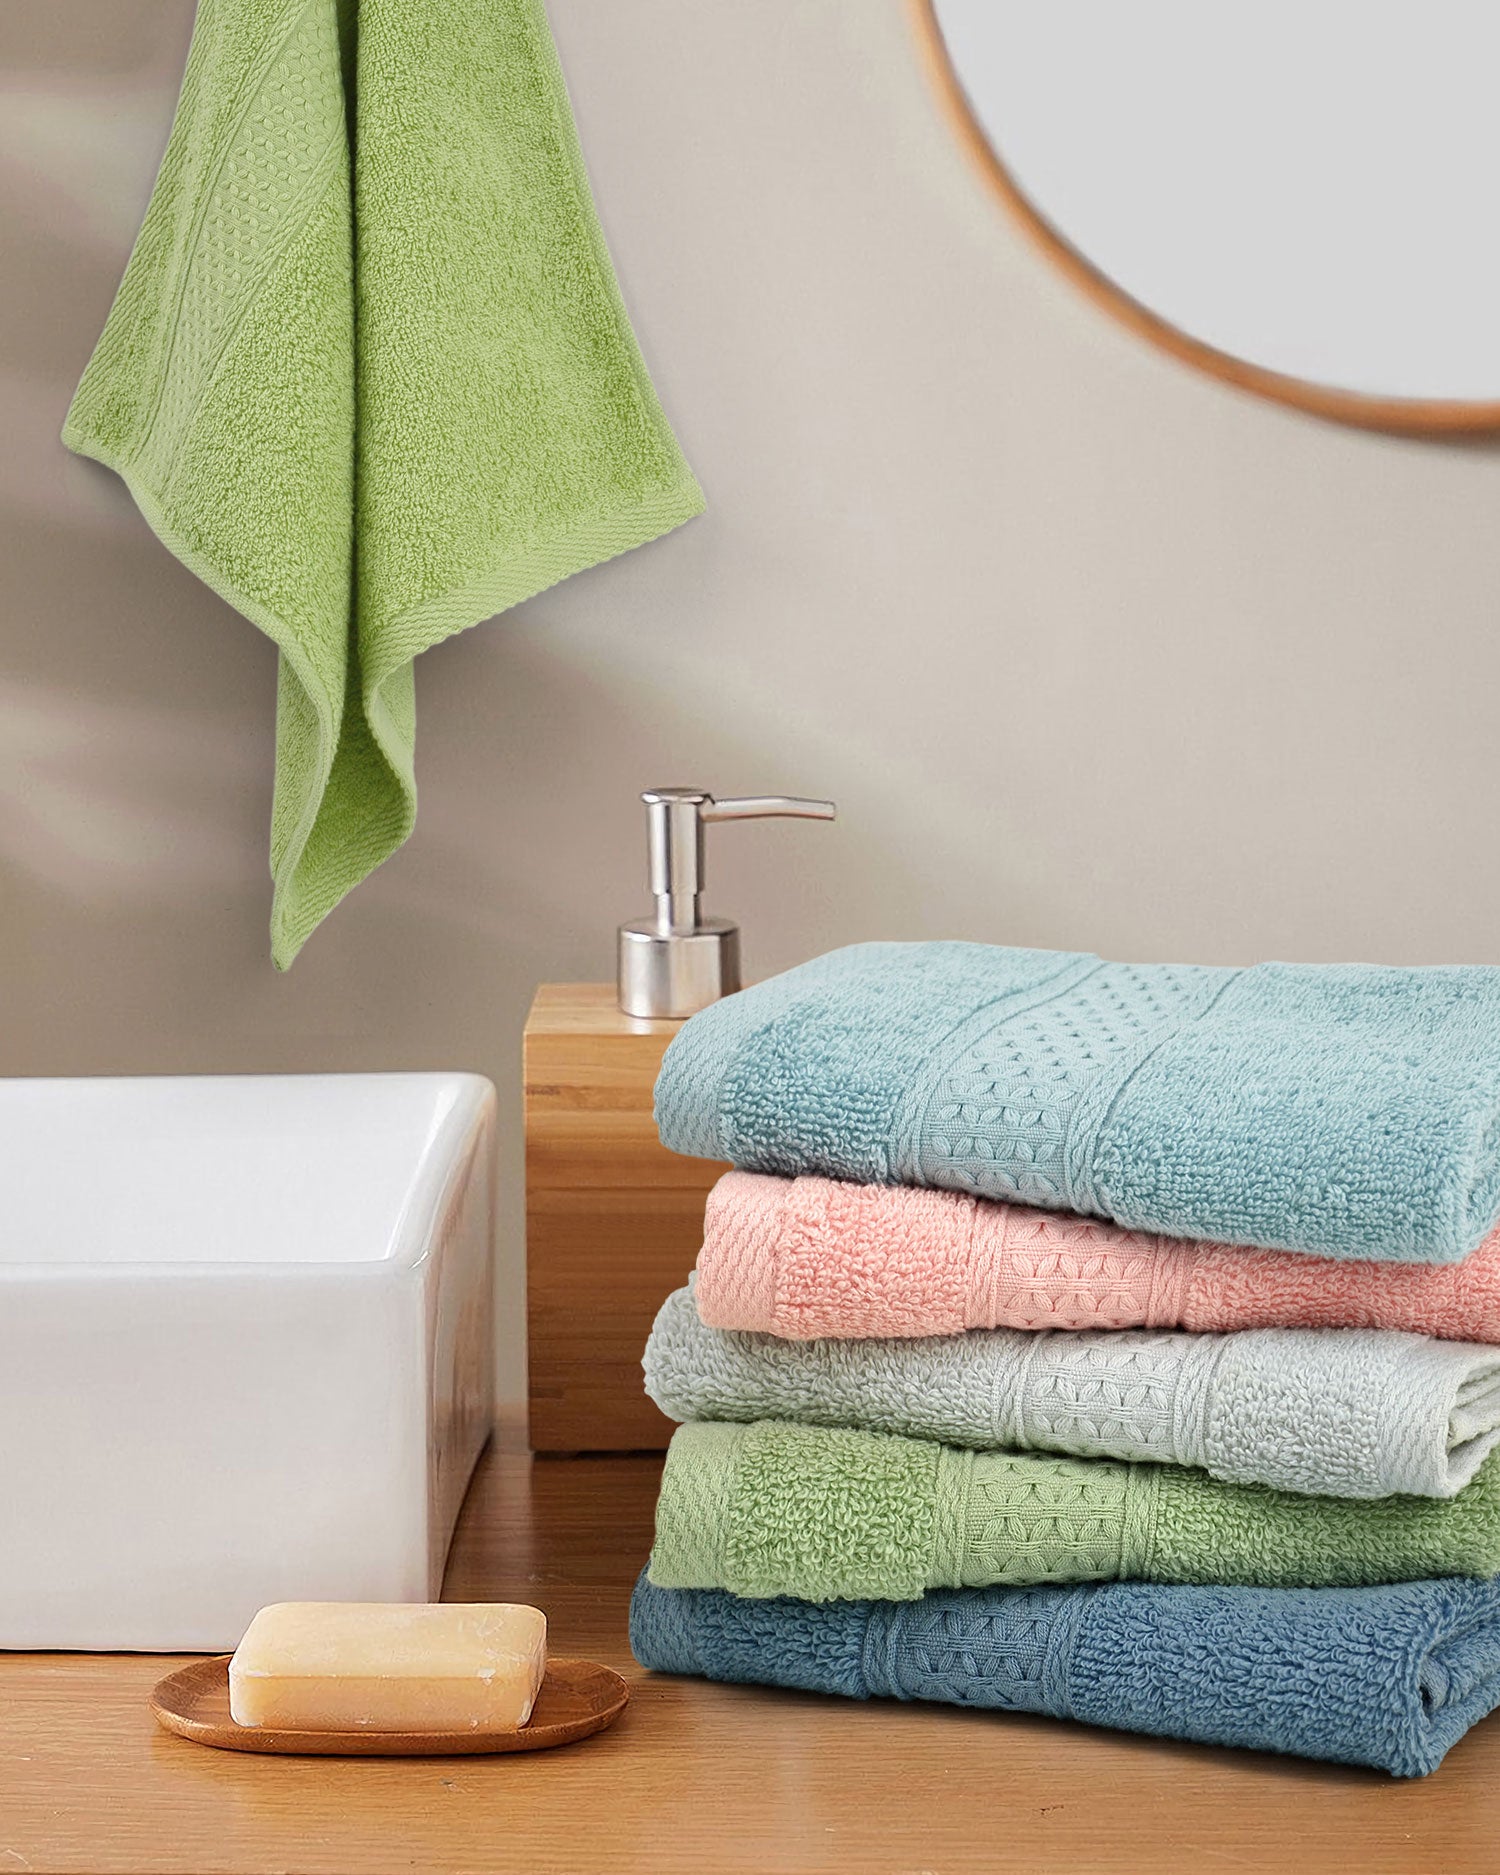 Cleanbear Washcloths Orange Face Cloths Set of 6 Bathroom Washcloth Set